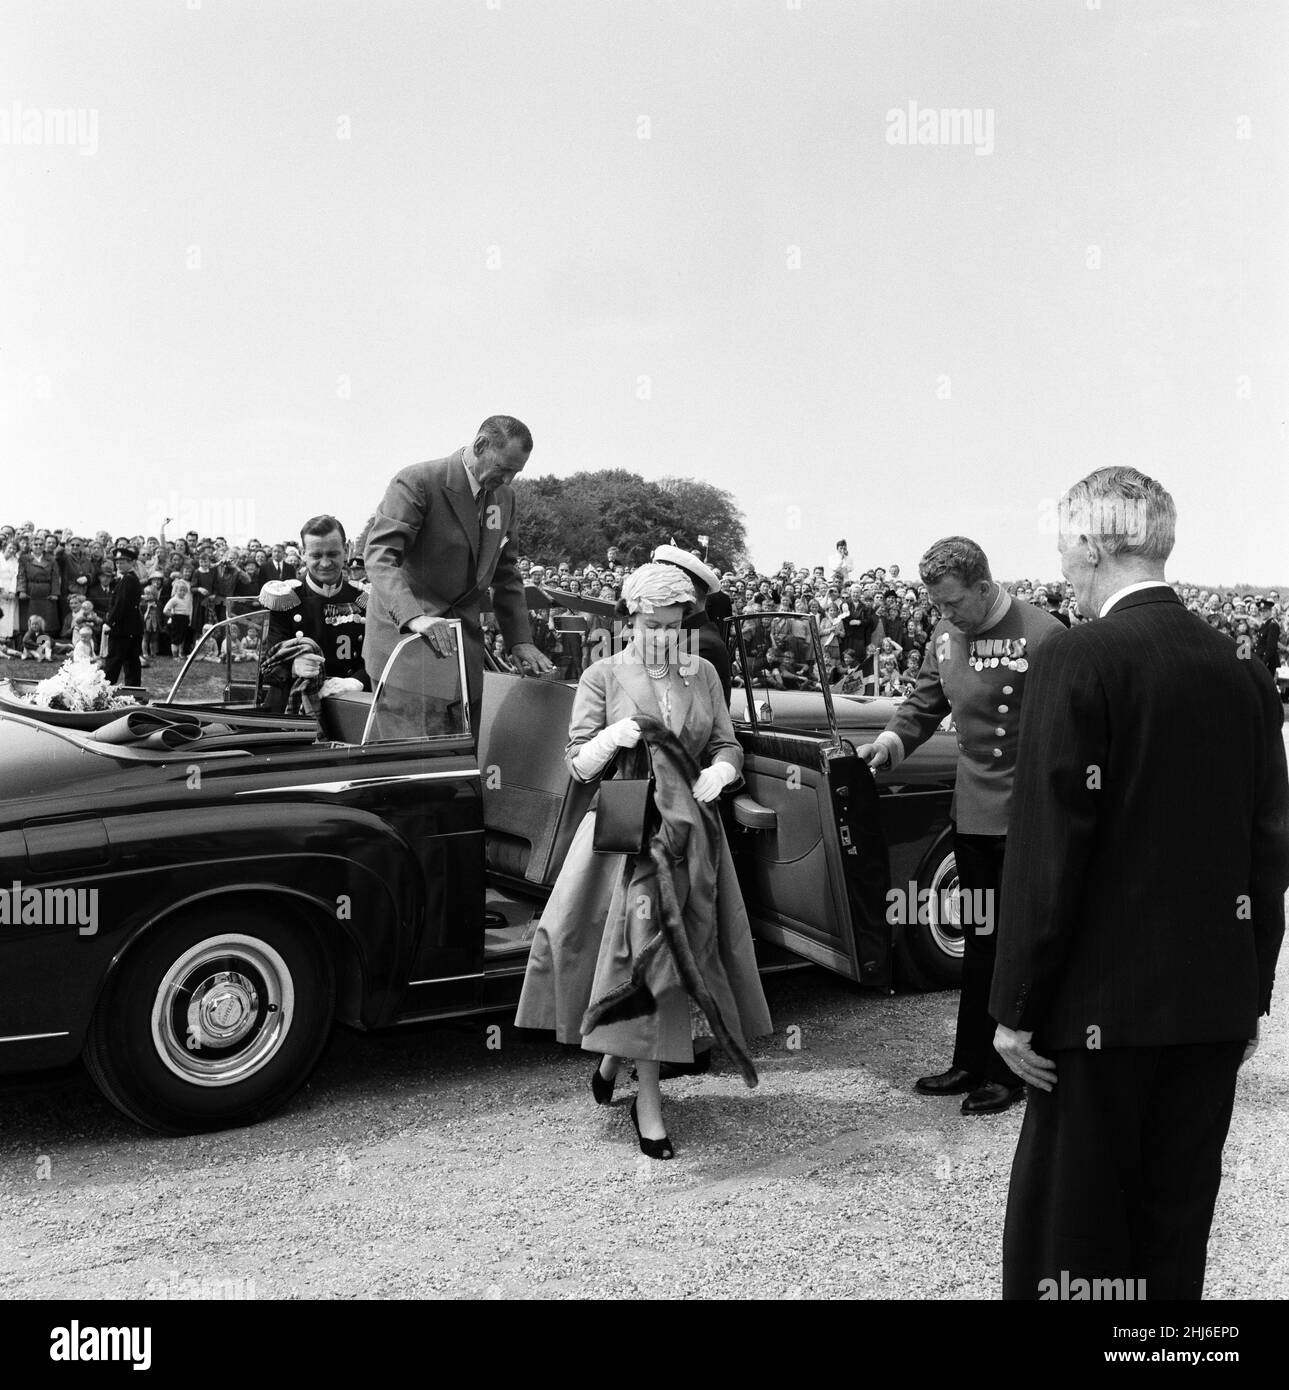 Königin Elizabeth II. Und Prinz Philip, Herzog von Edinburgh, besuchen Dänemark. Königin Elizabeth II. Hält ihren Umhang über ihren Arm, nachdem sie aus ihrem Auto gesteigt war, als sie im Jagdschloss ankam, wo sie zu Mittag gegessen hatte. 23rd Mai 1957. Stockfoto